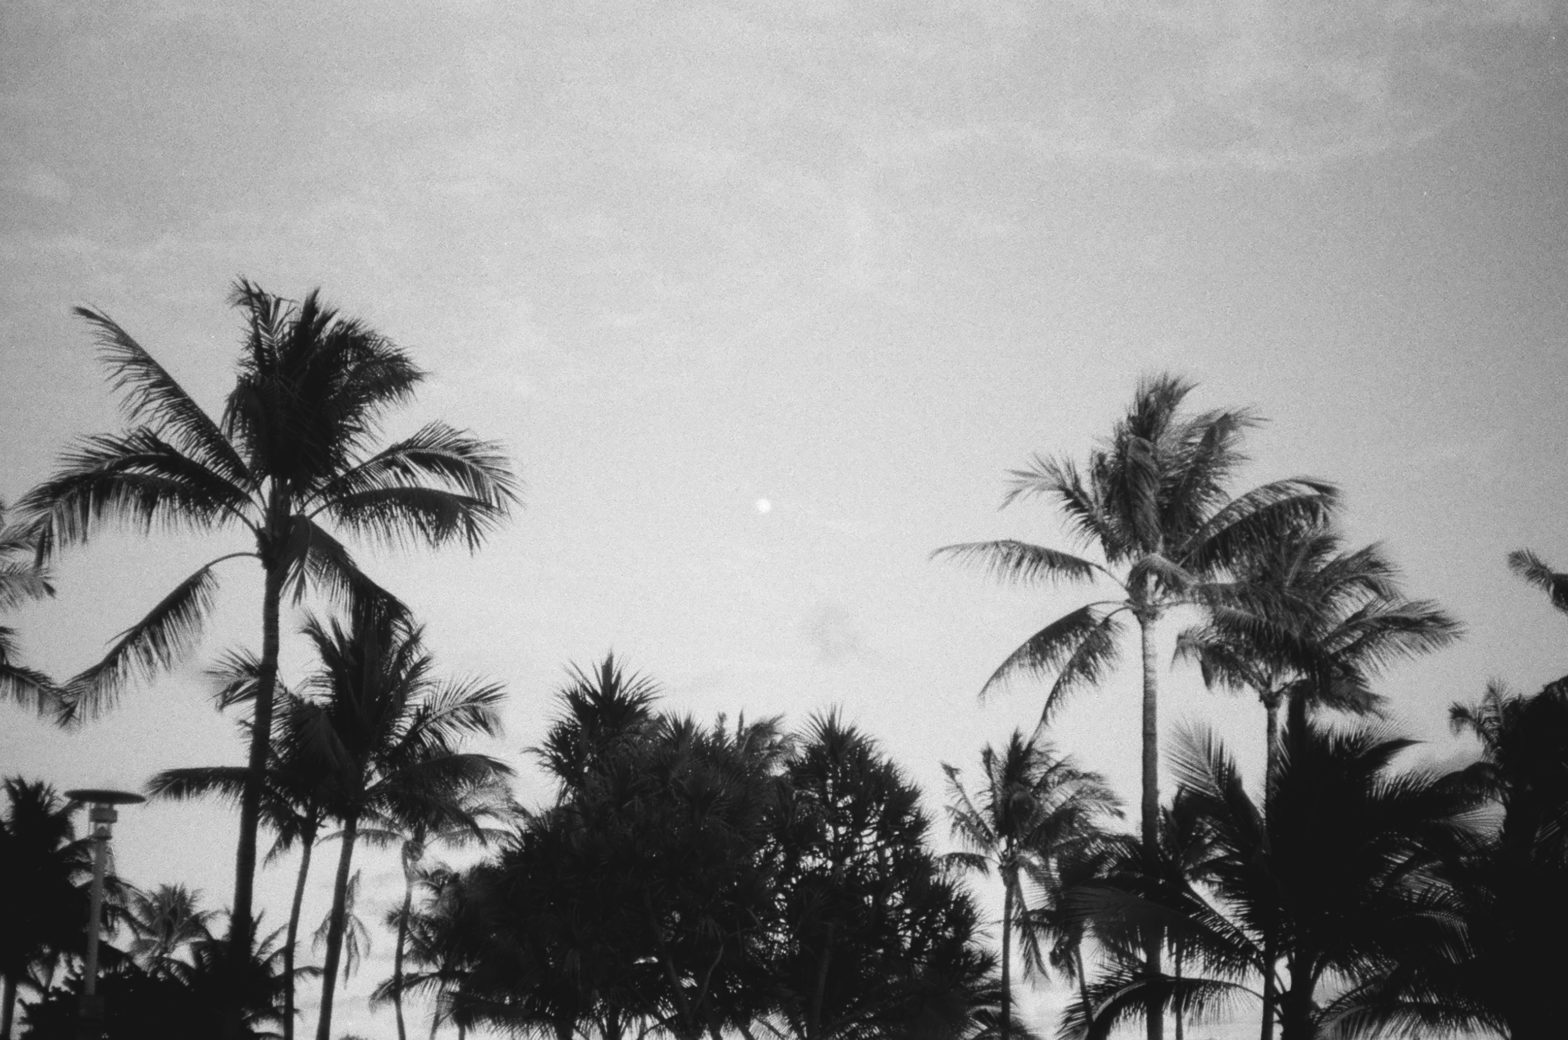 The moon Miami South beach